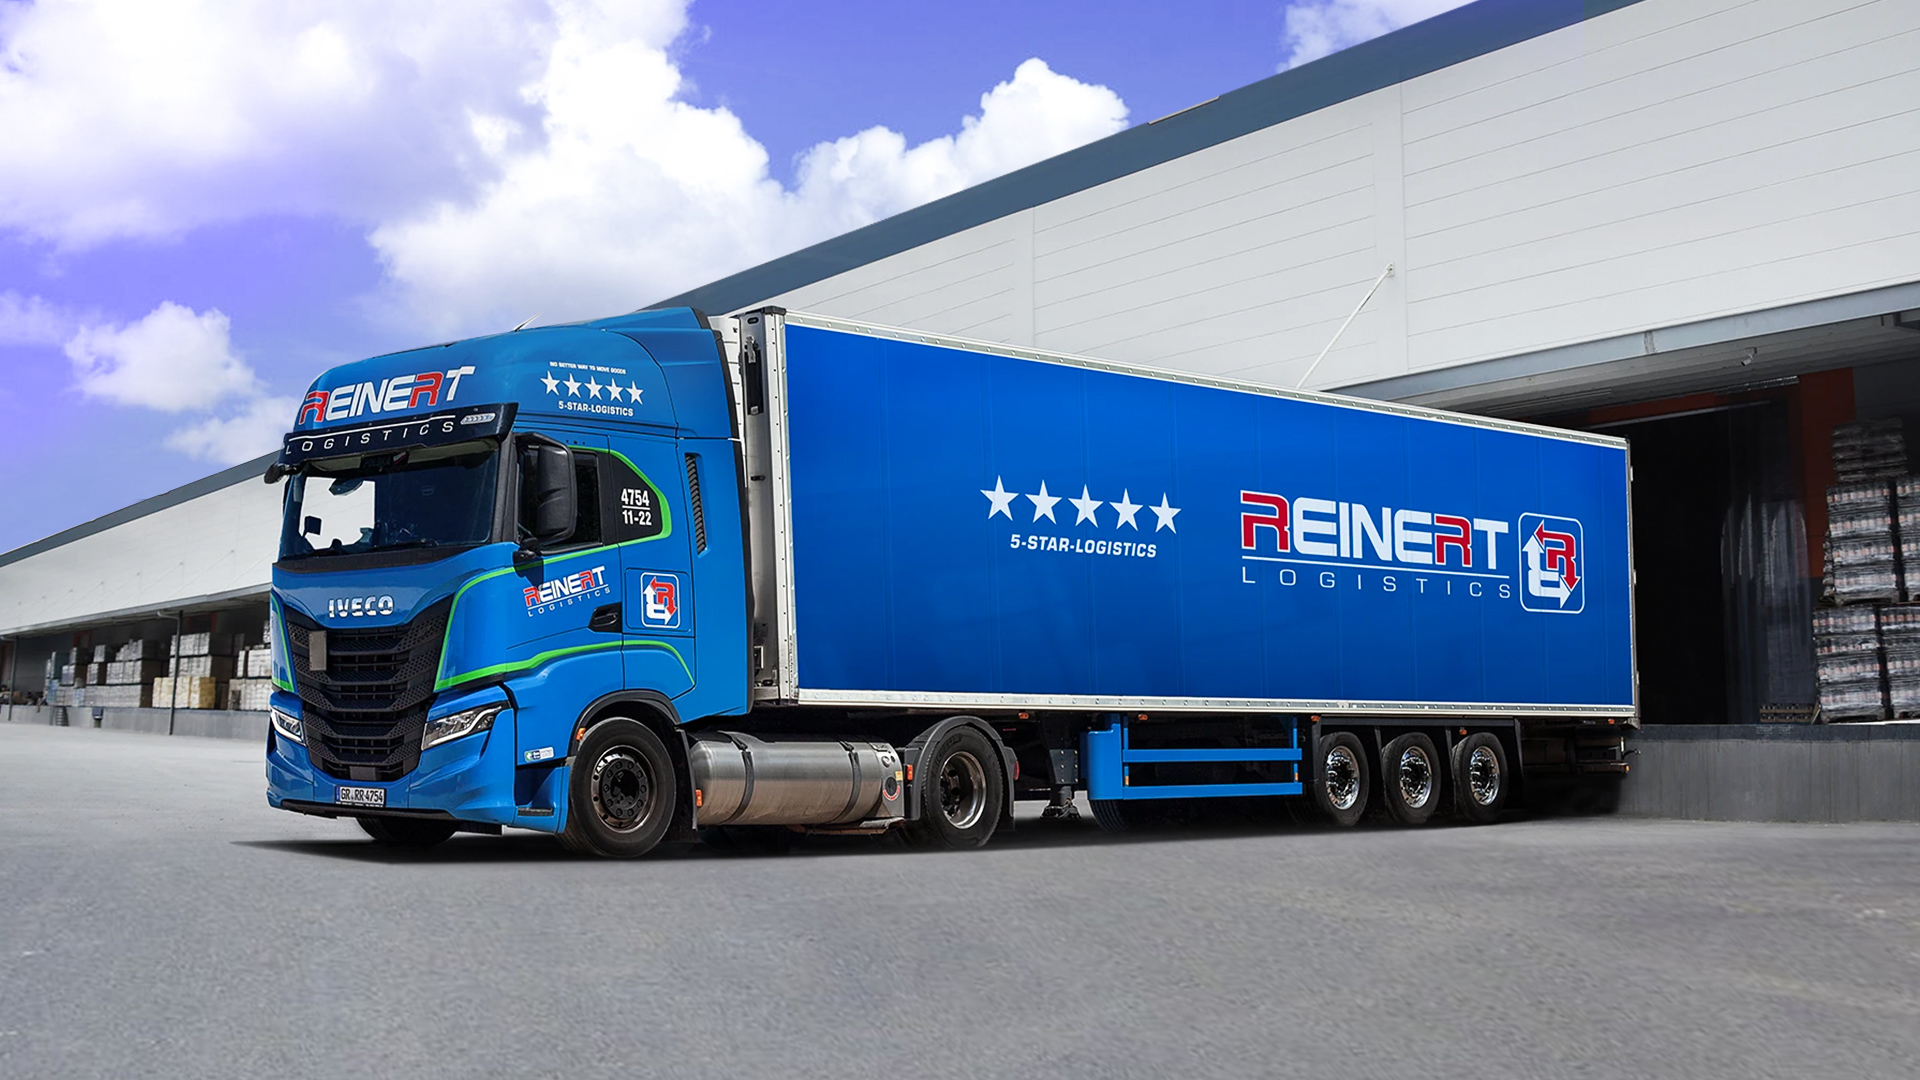 Proget zarządzanie mobilnością dla transportu i logistyki, ciężarówka firmy Reinert Logistics